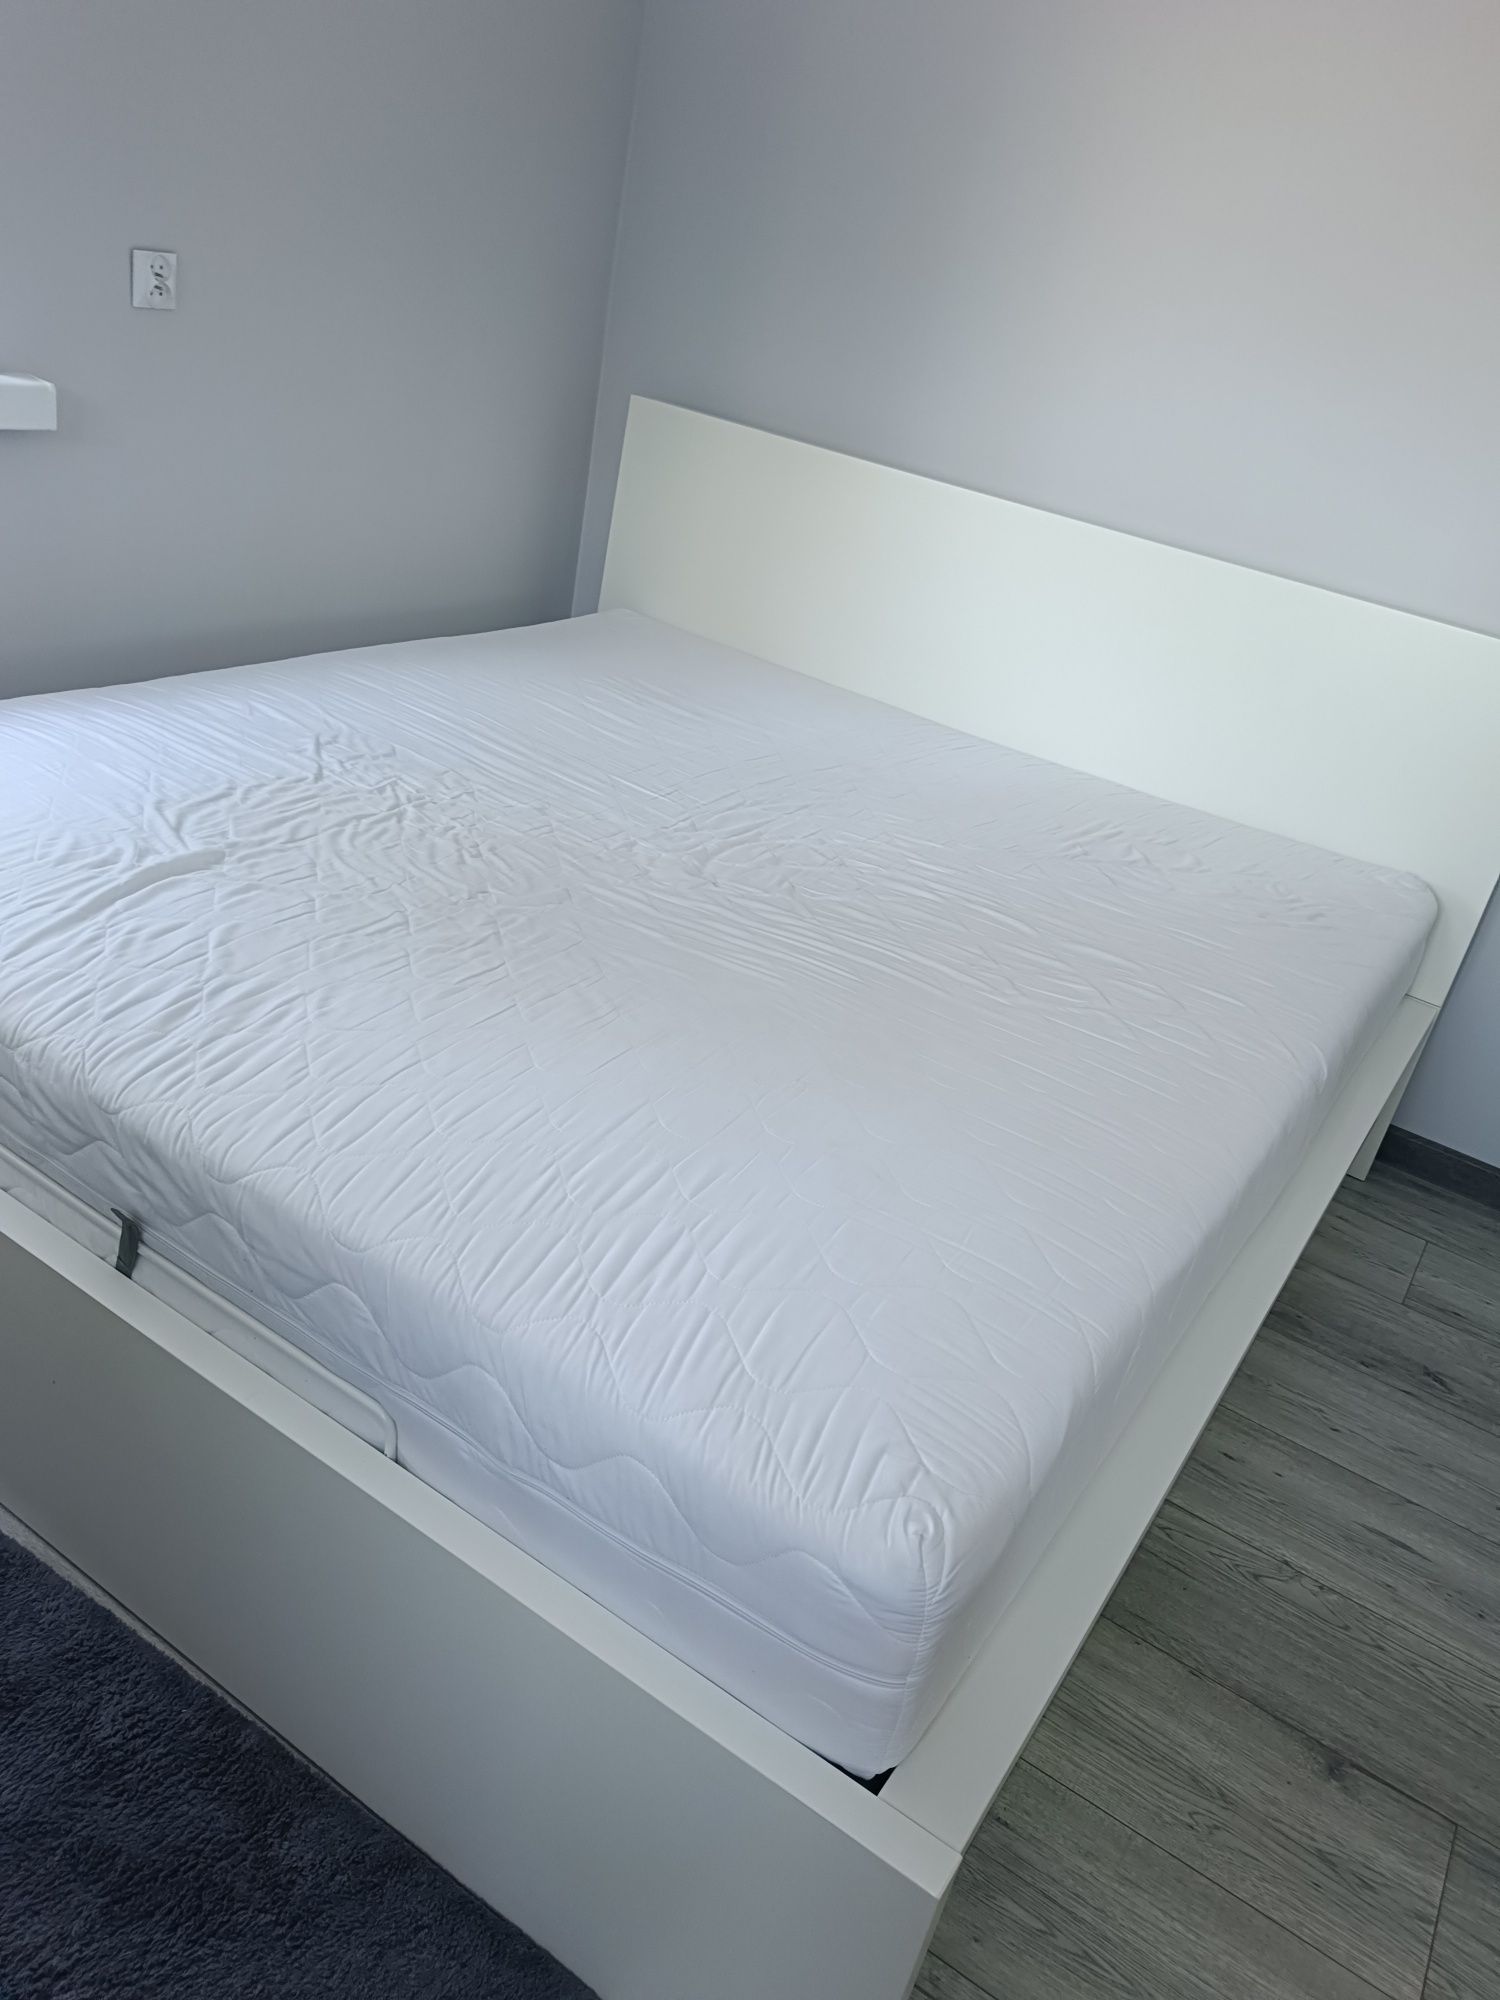 Łóżko Malm Ikea 180x200